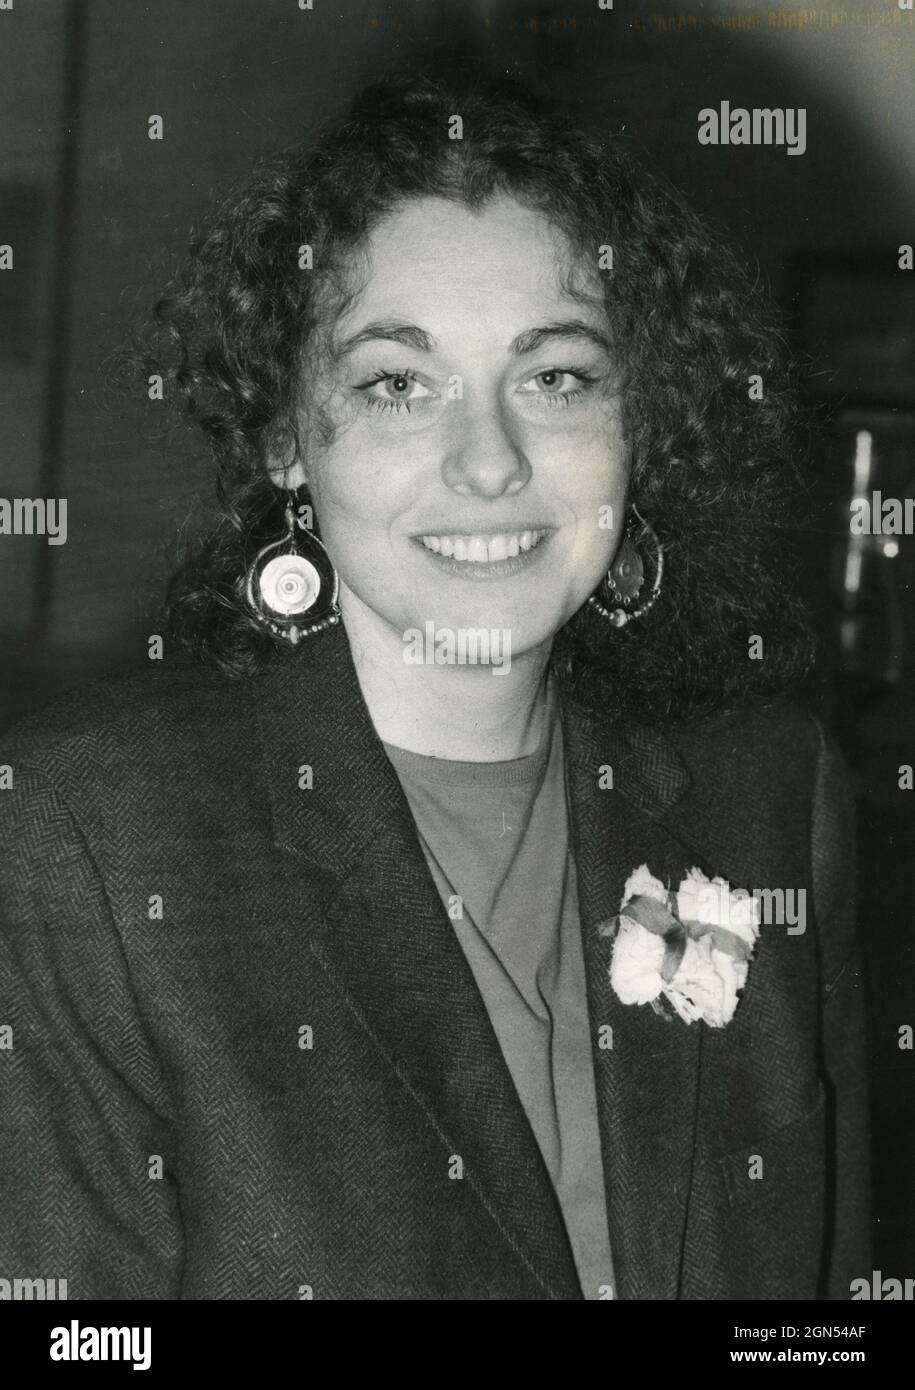 Giornalista italiano Gloria Satta, anni '70 Foto Stock